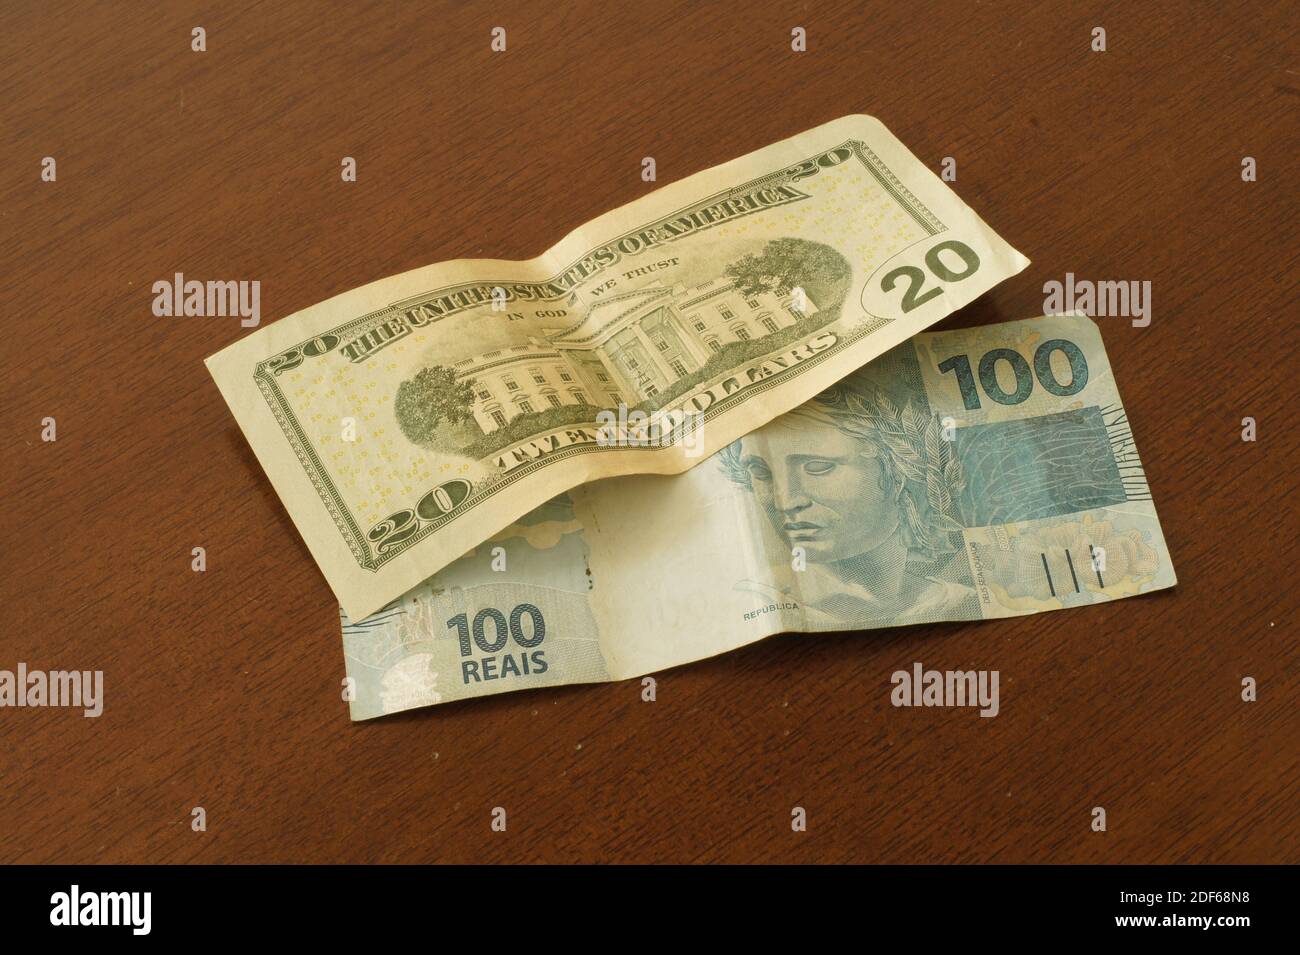 Un billet de 20 dollars qui vaut un billet de 100 reais brésiliens sur une table en décembre 2020. Banque D'Images